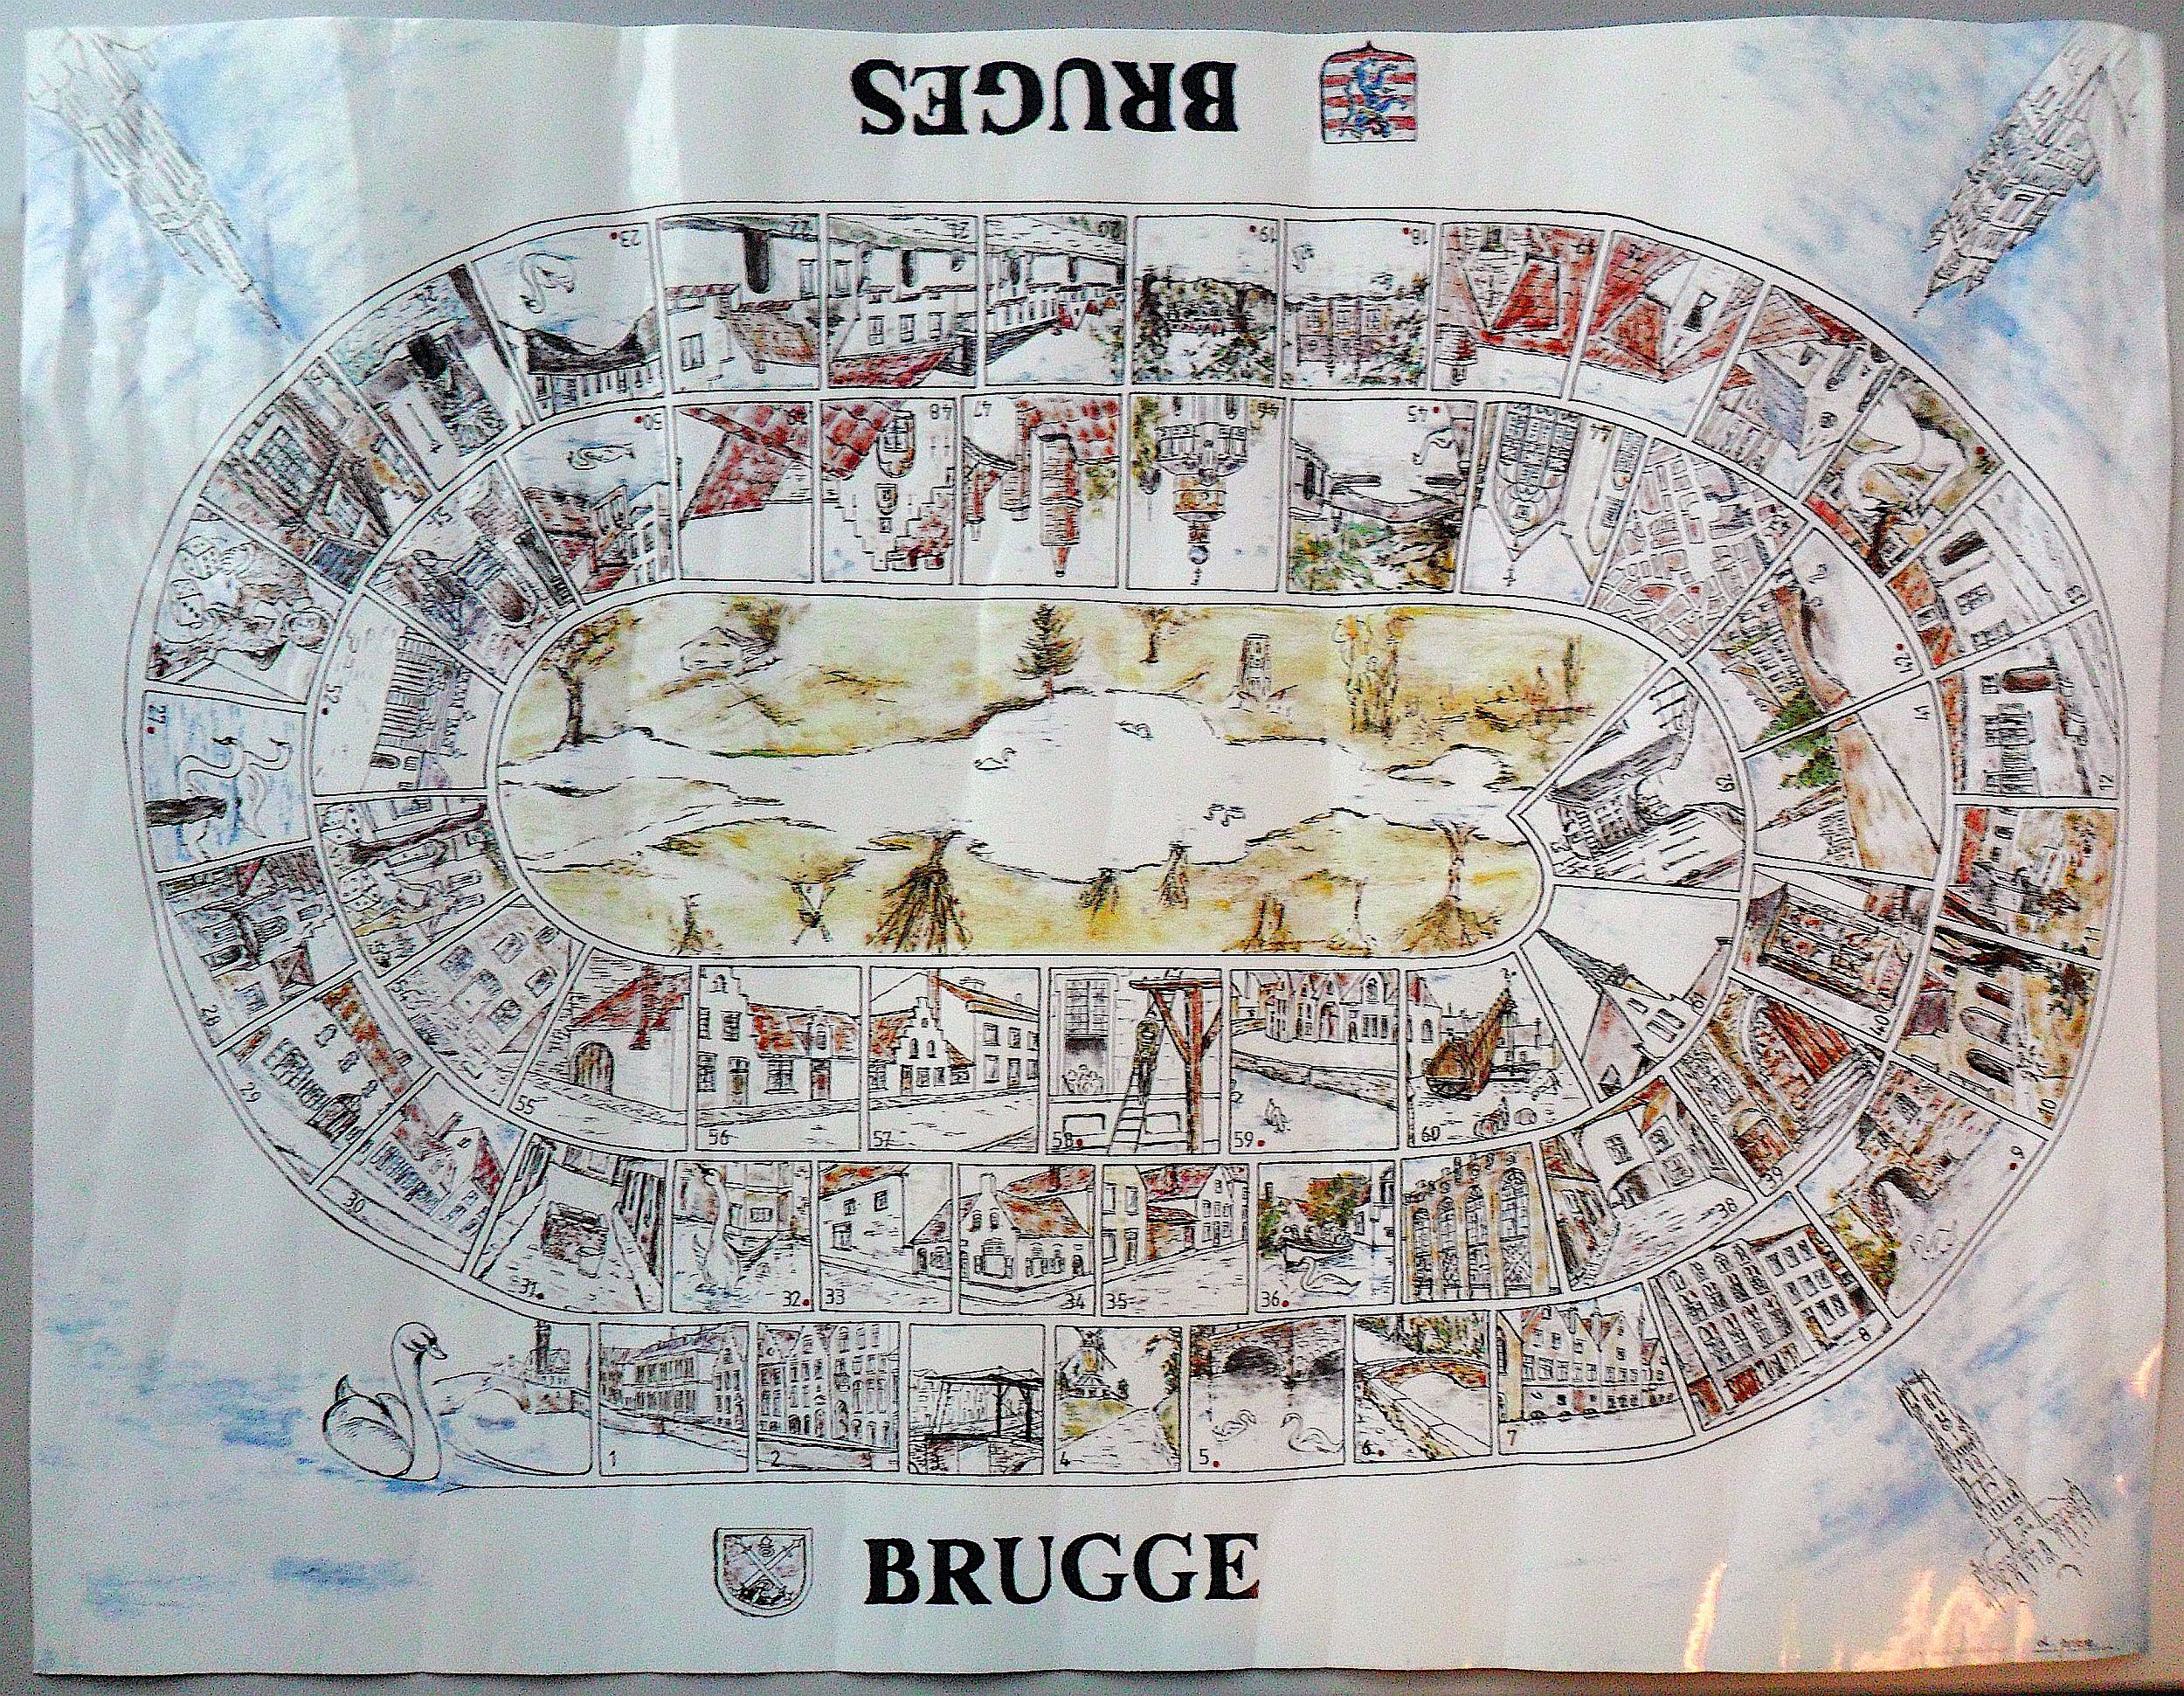 Brugge (Bruges): Brugs Zwanenspel